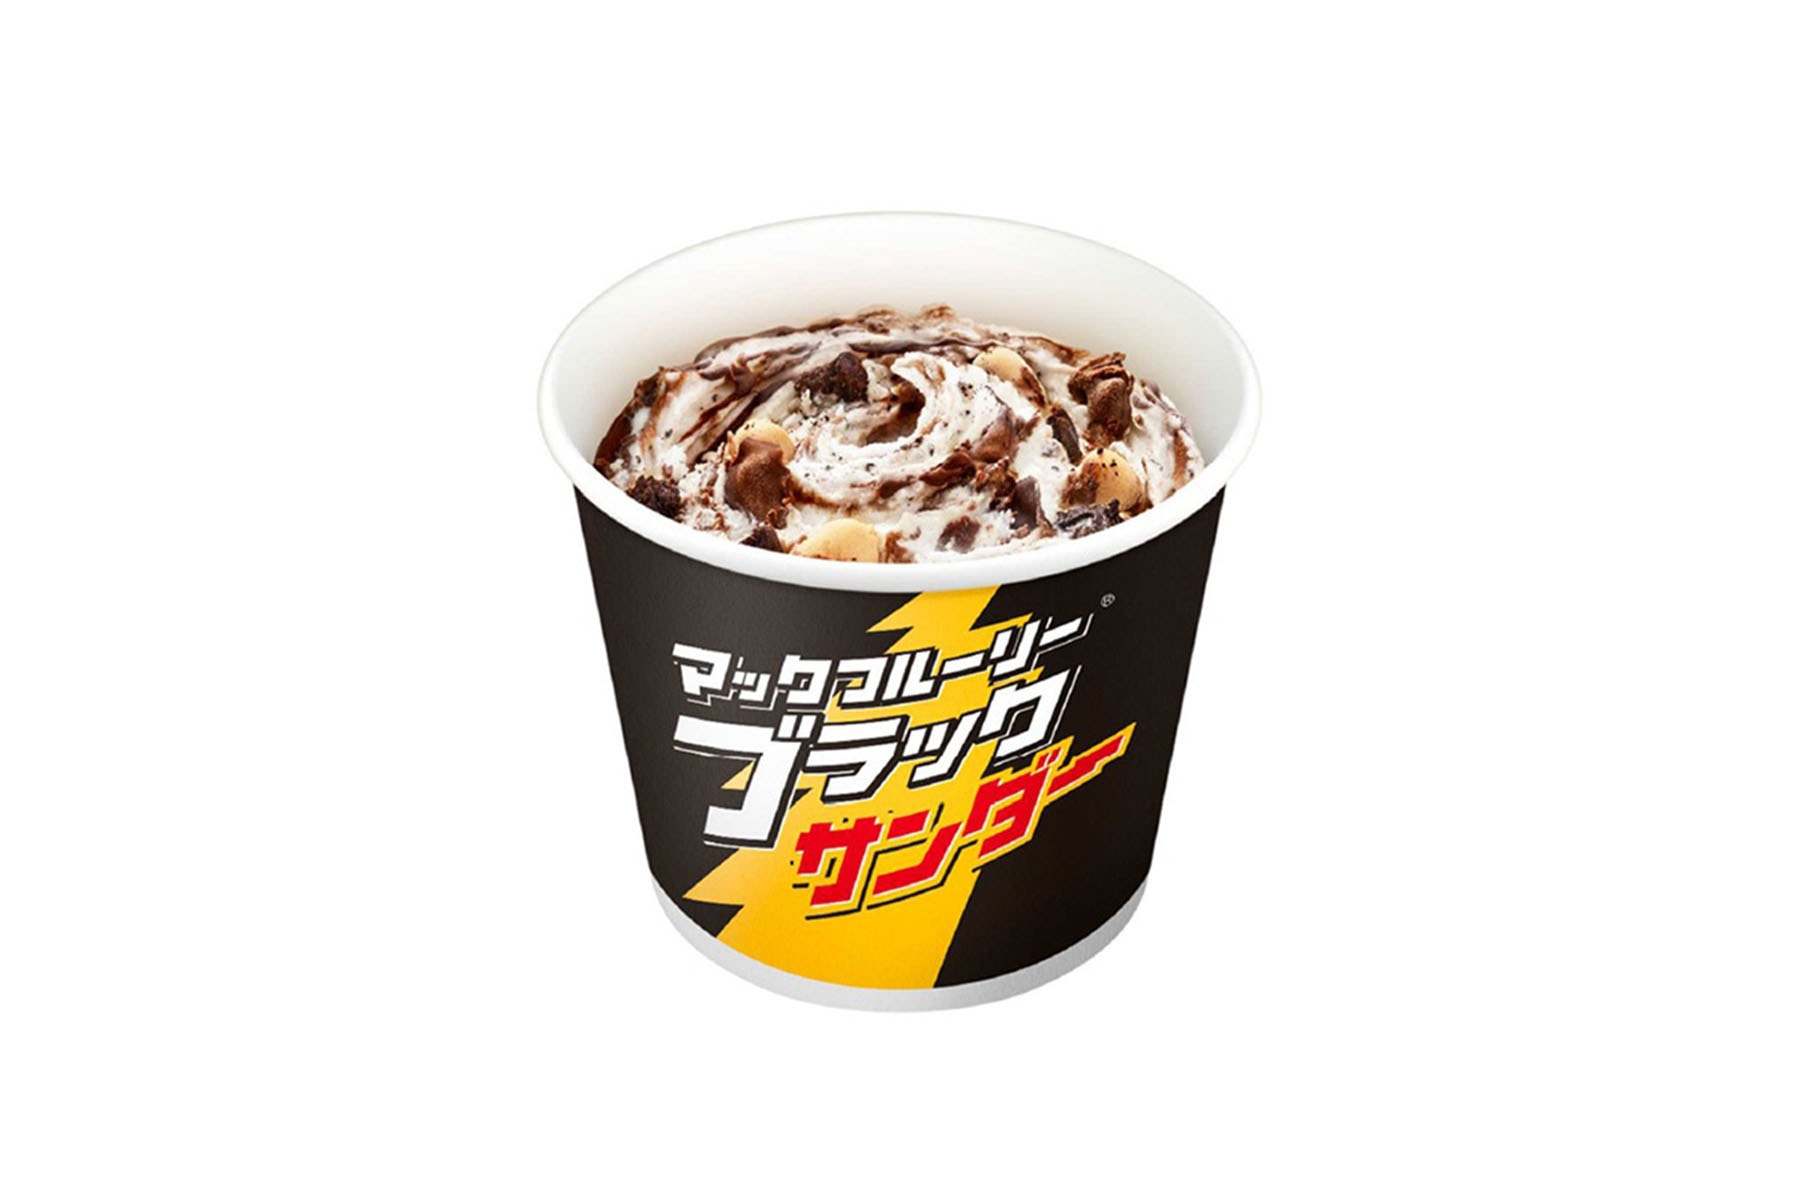 日本 McDonald’s 復刻推出人氣甜品 Black Thunder McFlurry